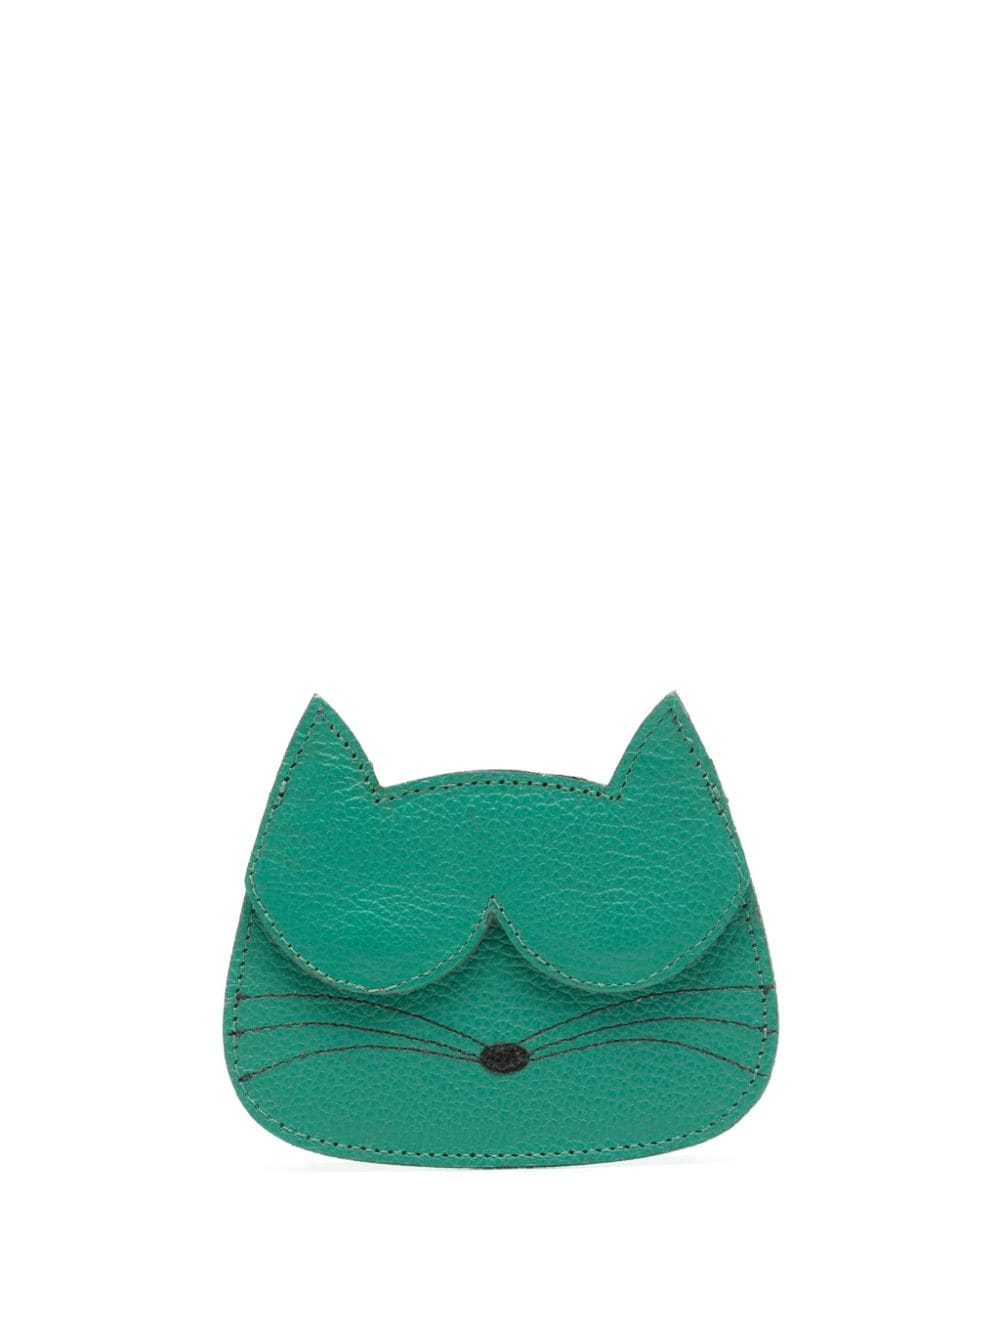 Sarah Chofakian cat-shape leather cardholder - Green von Sarah Chofakian